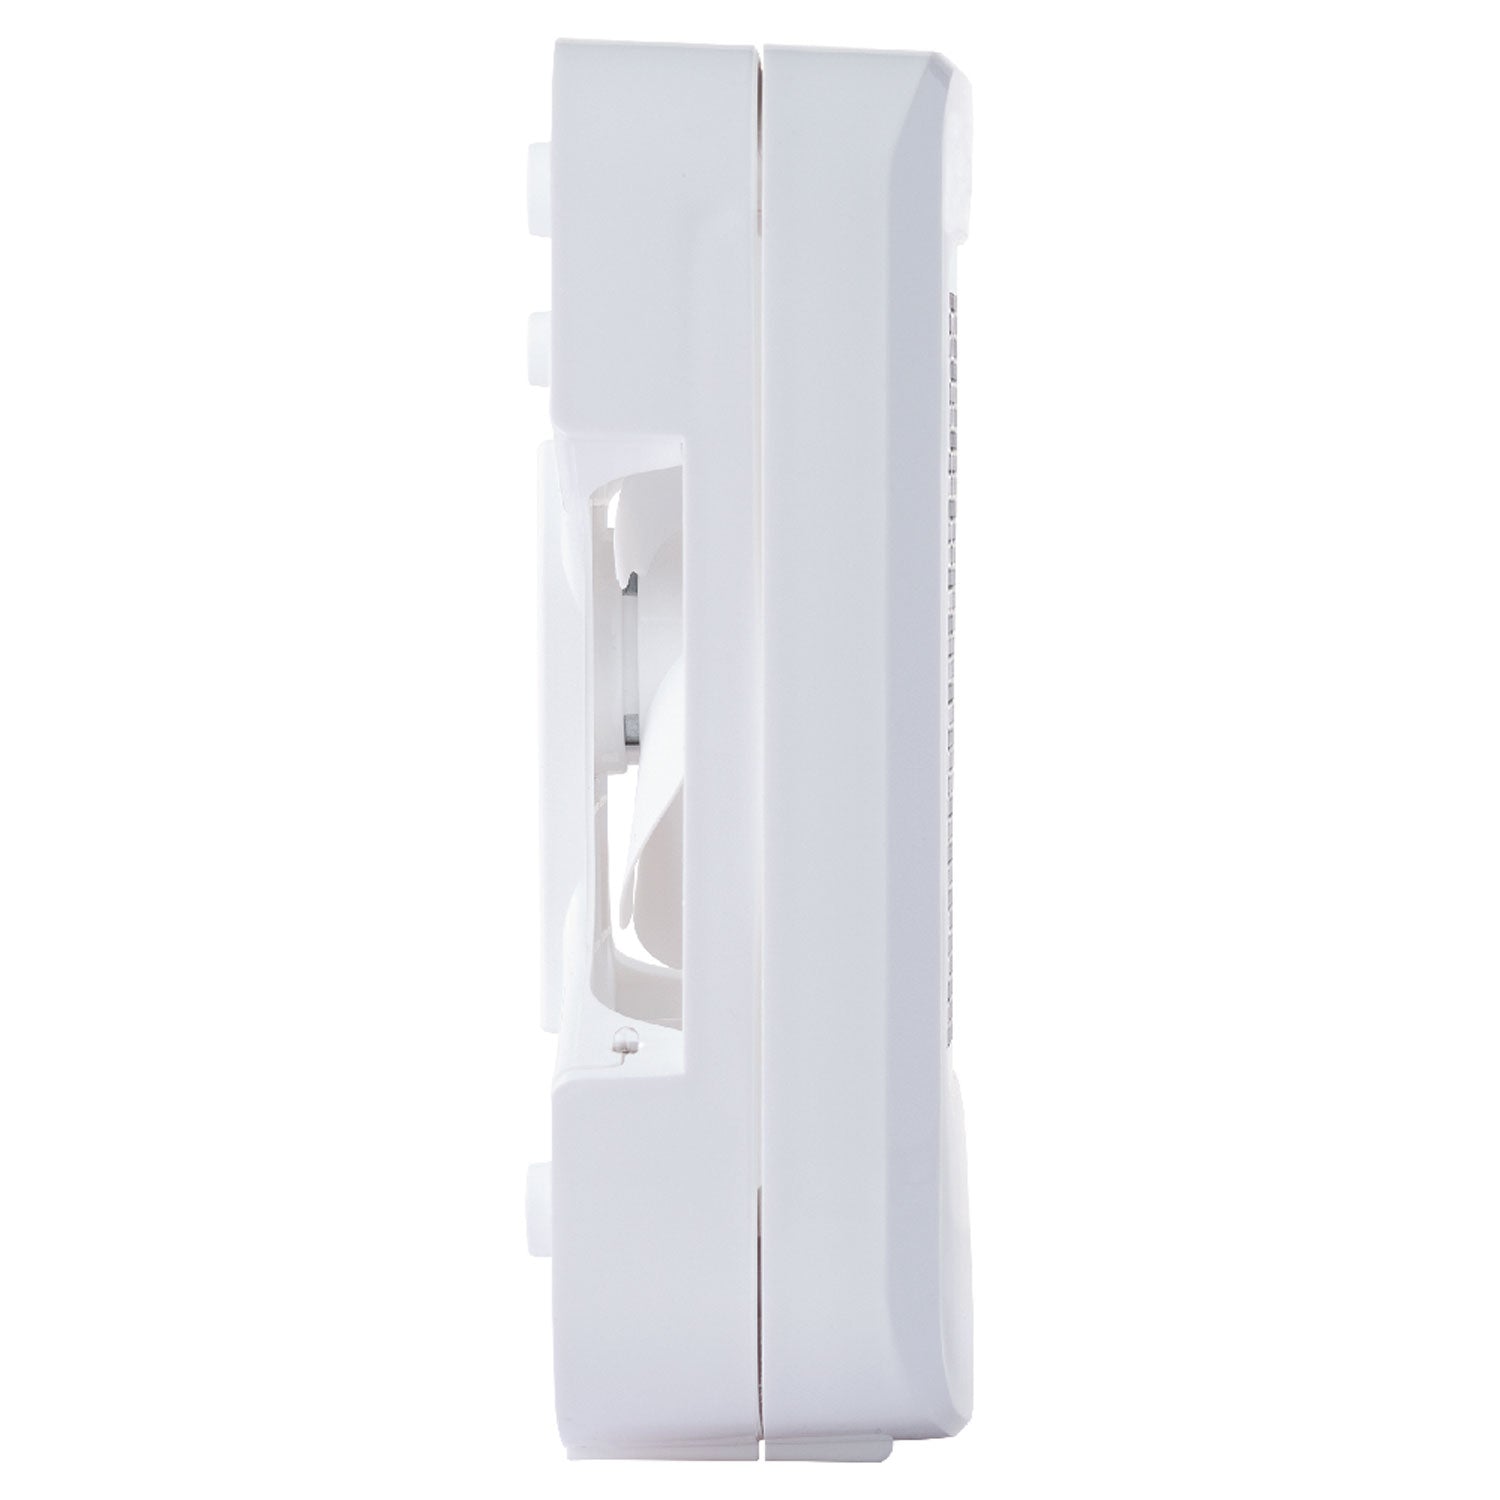 ourfresh Dispenser 2.0, 5.34 x 4.25 x 5.38, White, 12/Carton - 3